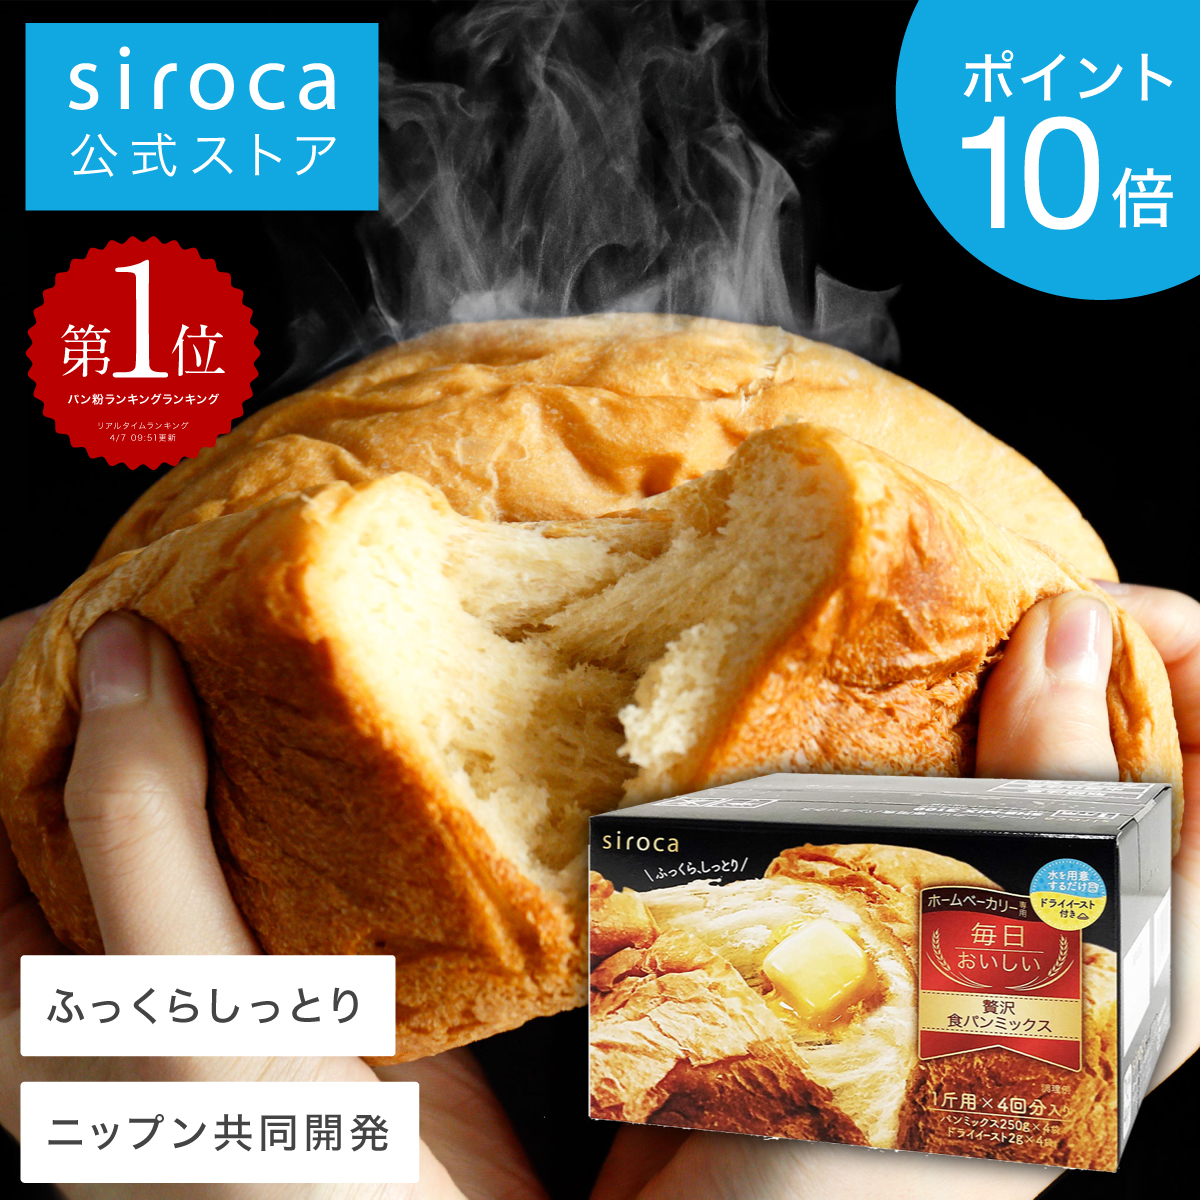 特別セール品】 siroca 毎日おいしい贅沢食パンミックス 250g×4入 SHB-MIX3100 パン